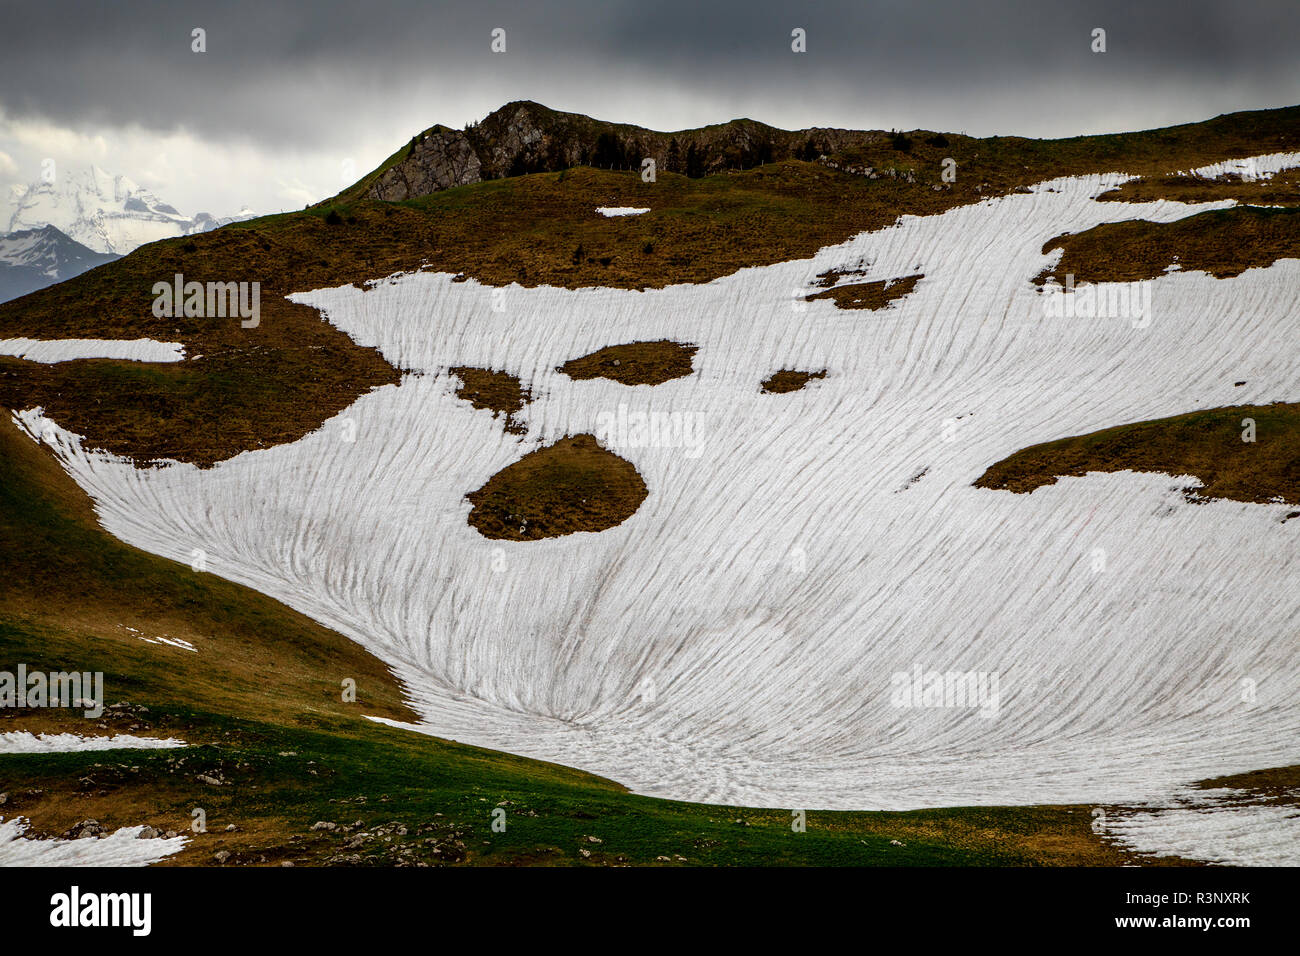 Des taches de neige blanche sont visibles dans le col de Gurnigel en Suisse. Les glaciers des Alpes fondent rapidement en raison du réchauffement climatique et beaucoup d'entre eux devraient disparaître d'ici 2070. La couverture de neige blanche reflète la lumière du soleil et la chaleur beaucoup mieux que la glace plus sombre. L'hiver 2017/2018 a vu des quantités records de neige dans les alpes, mais les températures records en été ont fondu la plupart d'entre elles déjà en juin. Banque D'Images